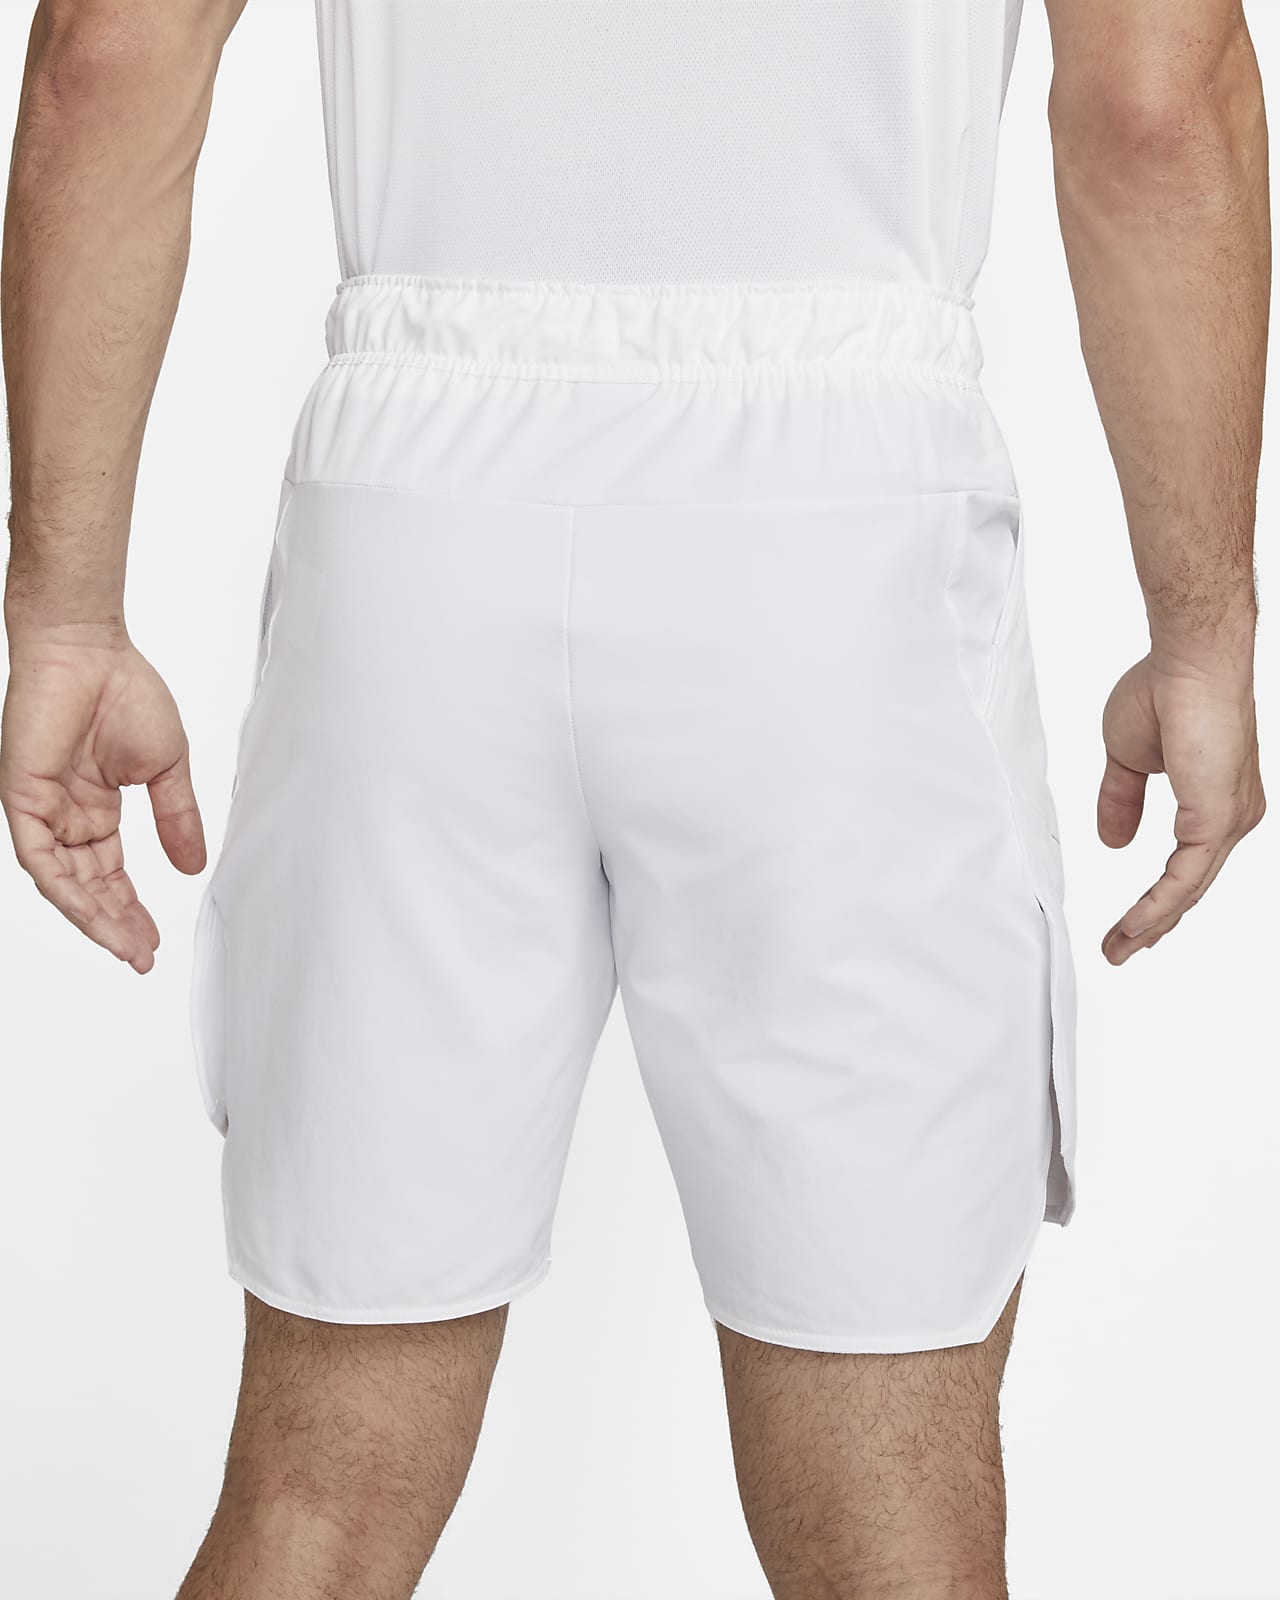 Nike Court Flex Zip Off Tennis Pants Grey & Black 887524 101 Men's